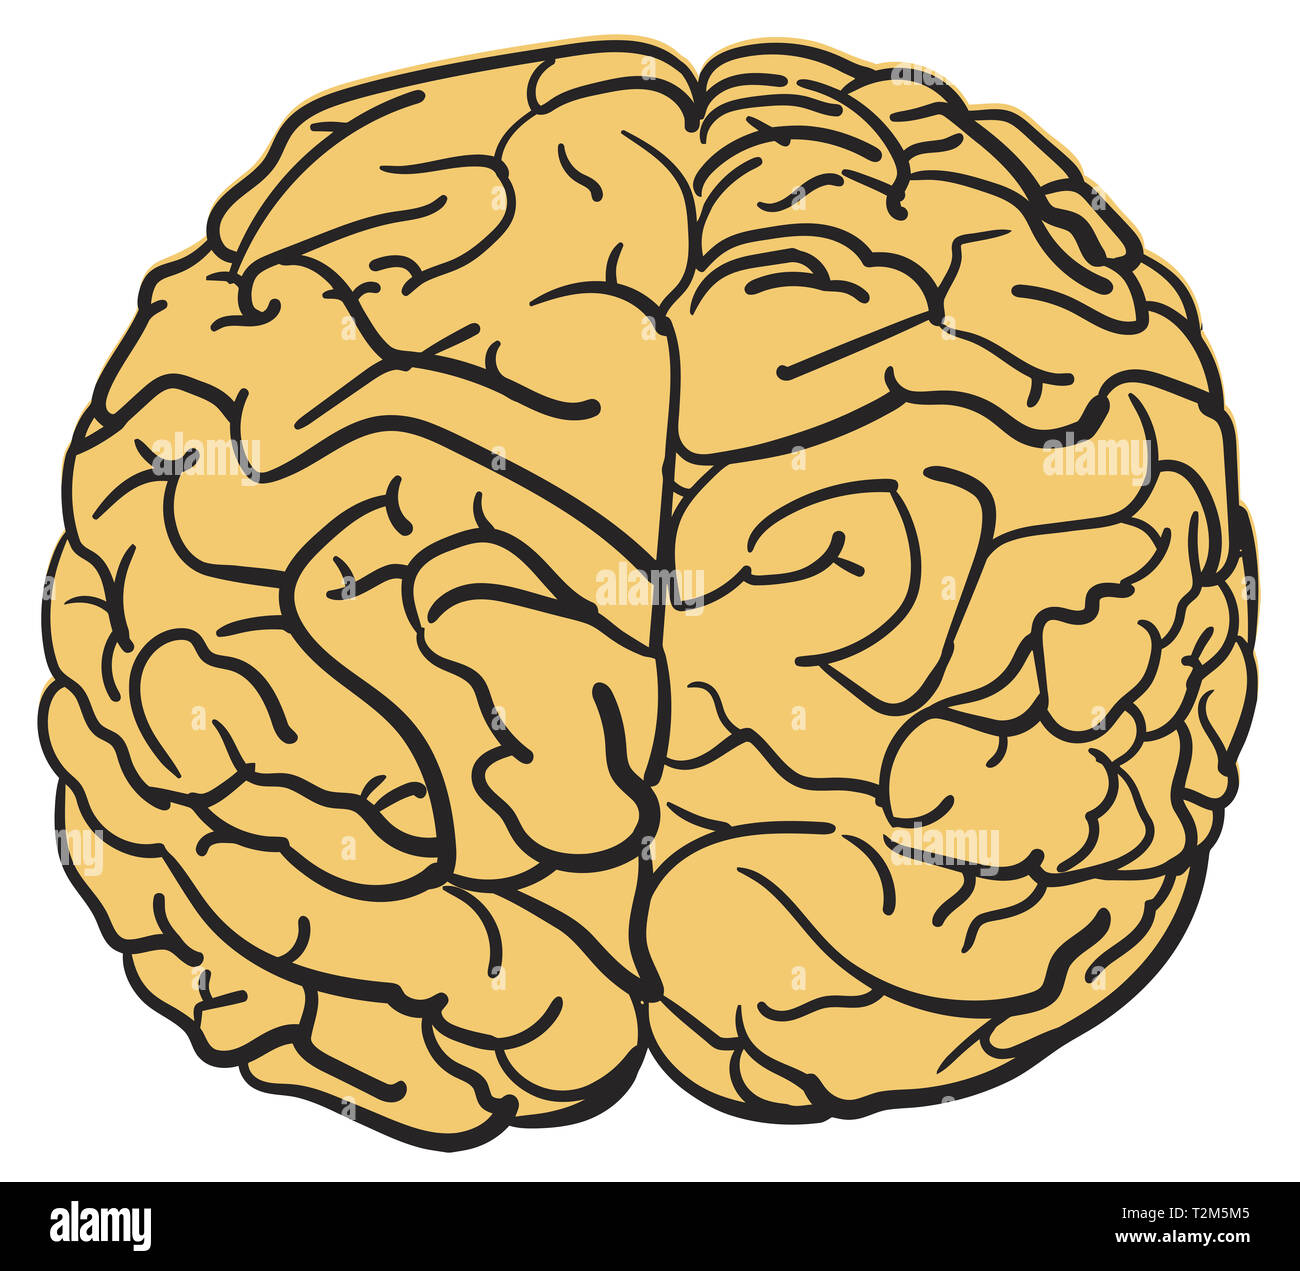 Menschliche Gehirn Wissenschaft Orgel geistige Weisheit Abbildung Stockfoto